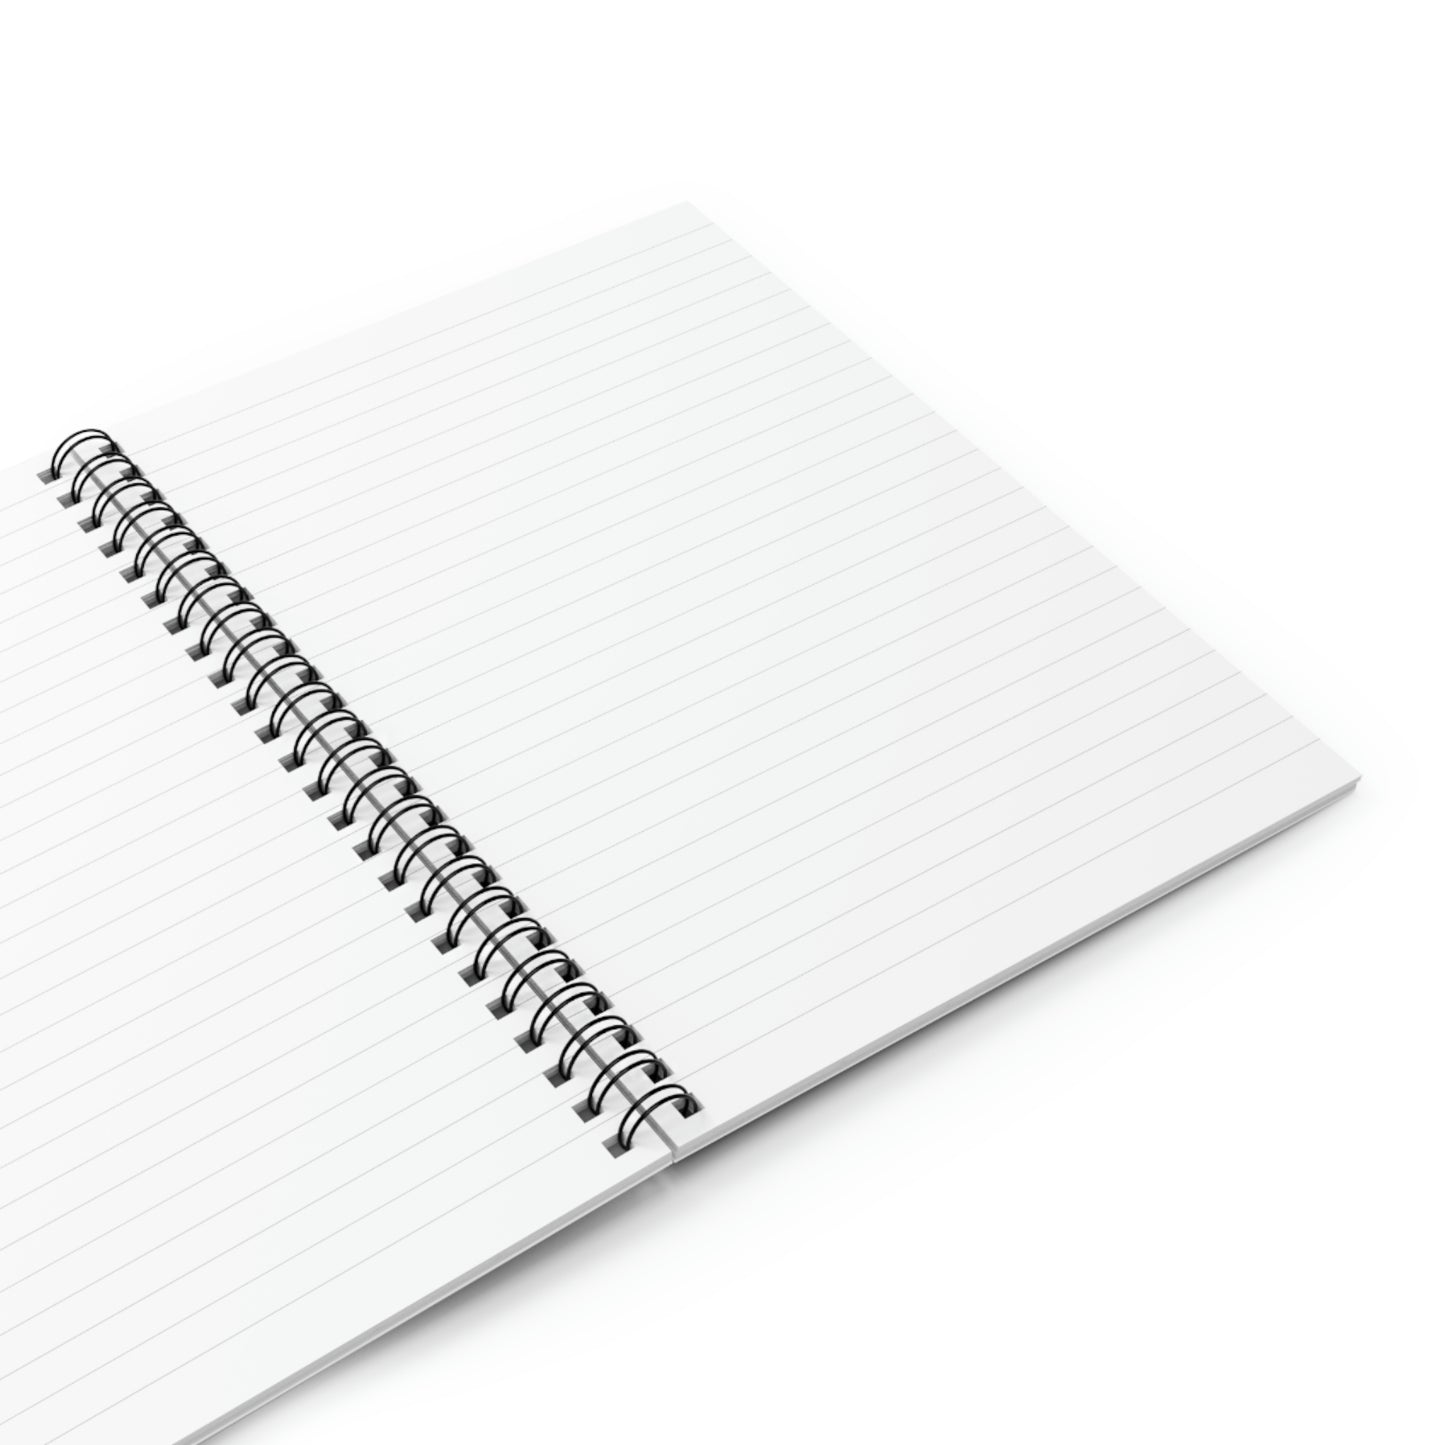 Elspeth - Spiral Notebook